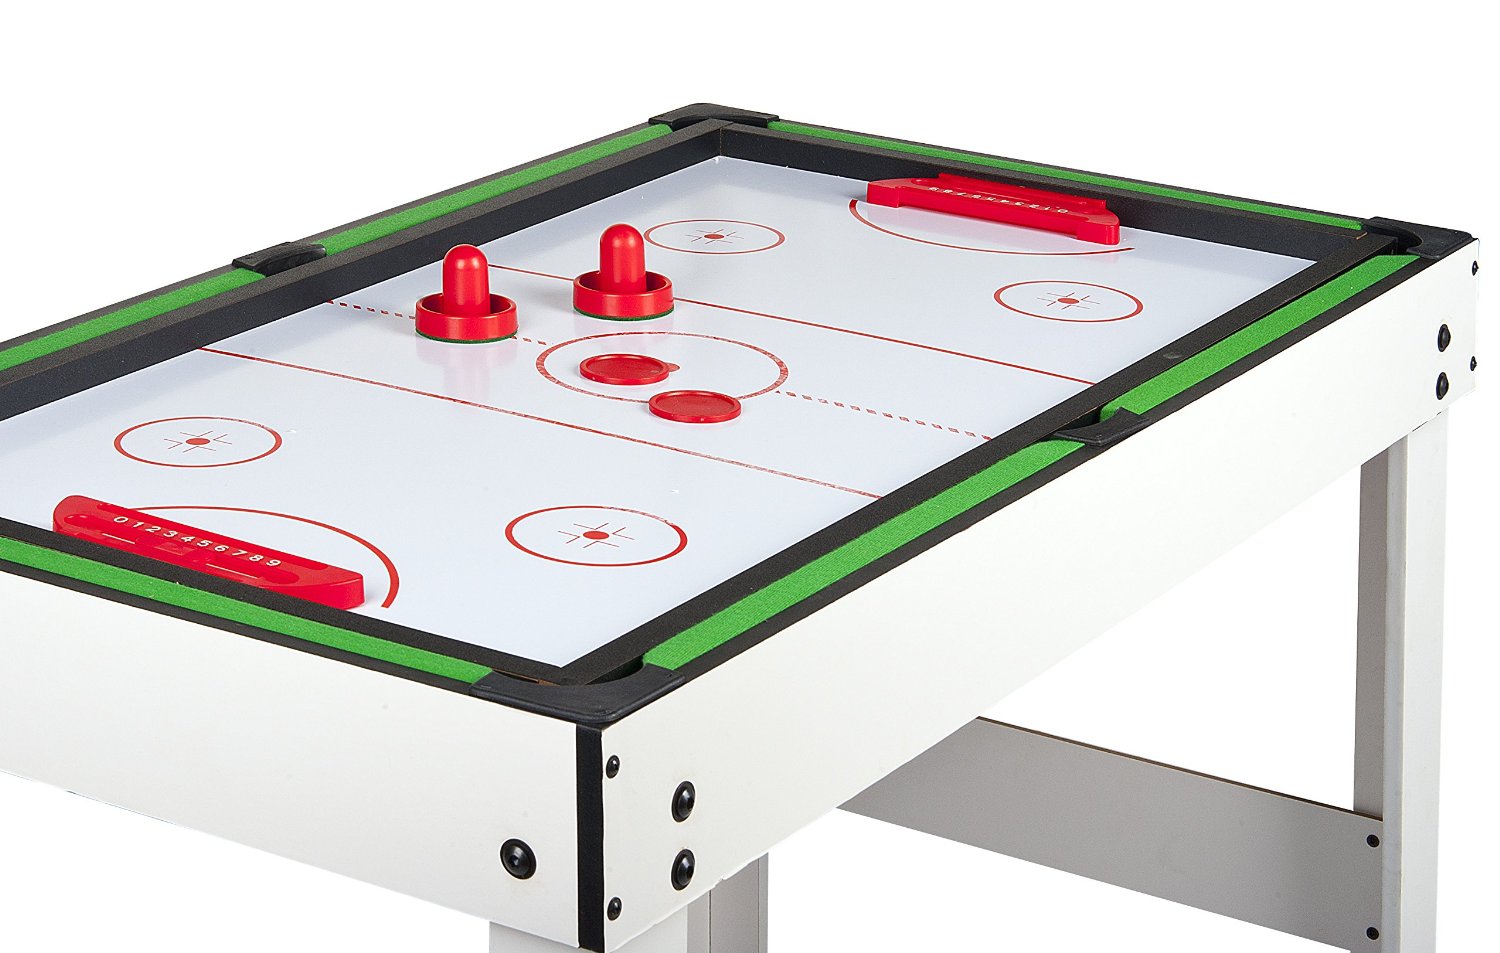 Tavolo multigioco 4 in 1 con biliardo pool, calcetto, hockey e ping pong  Leomark IT